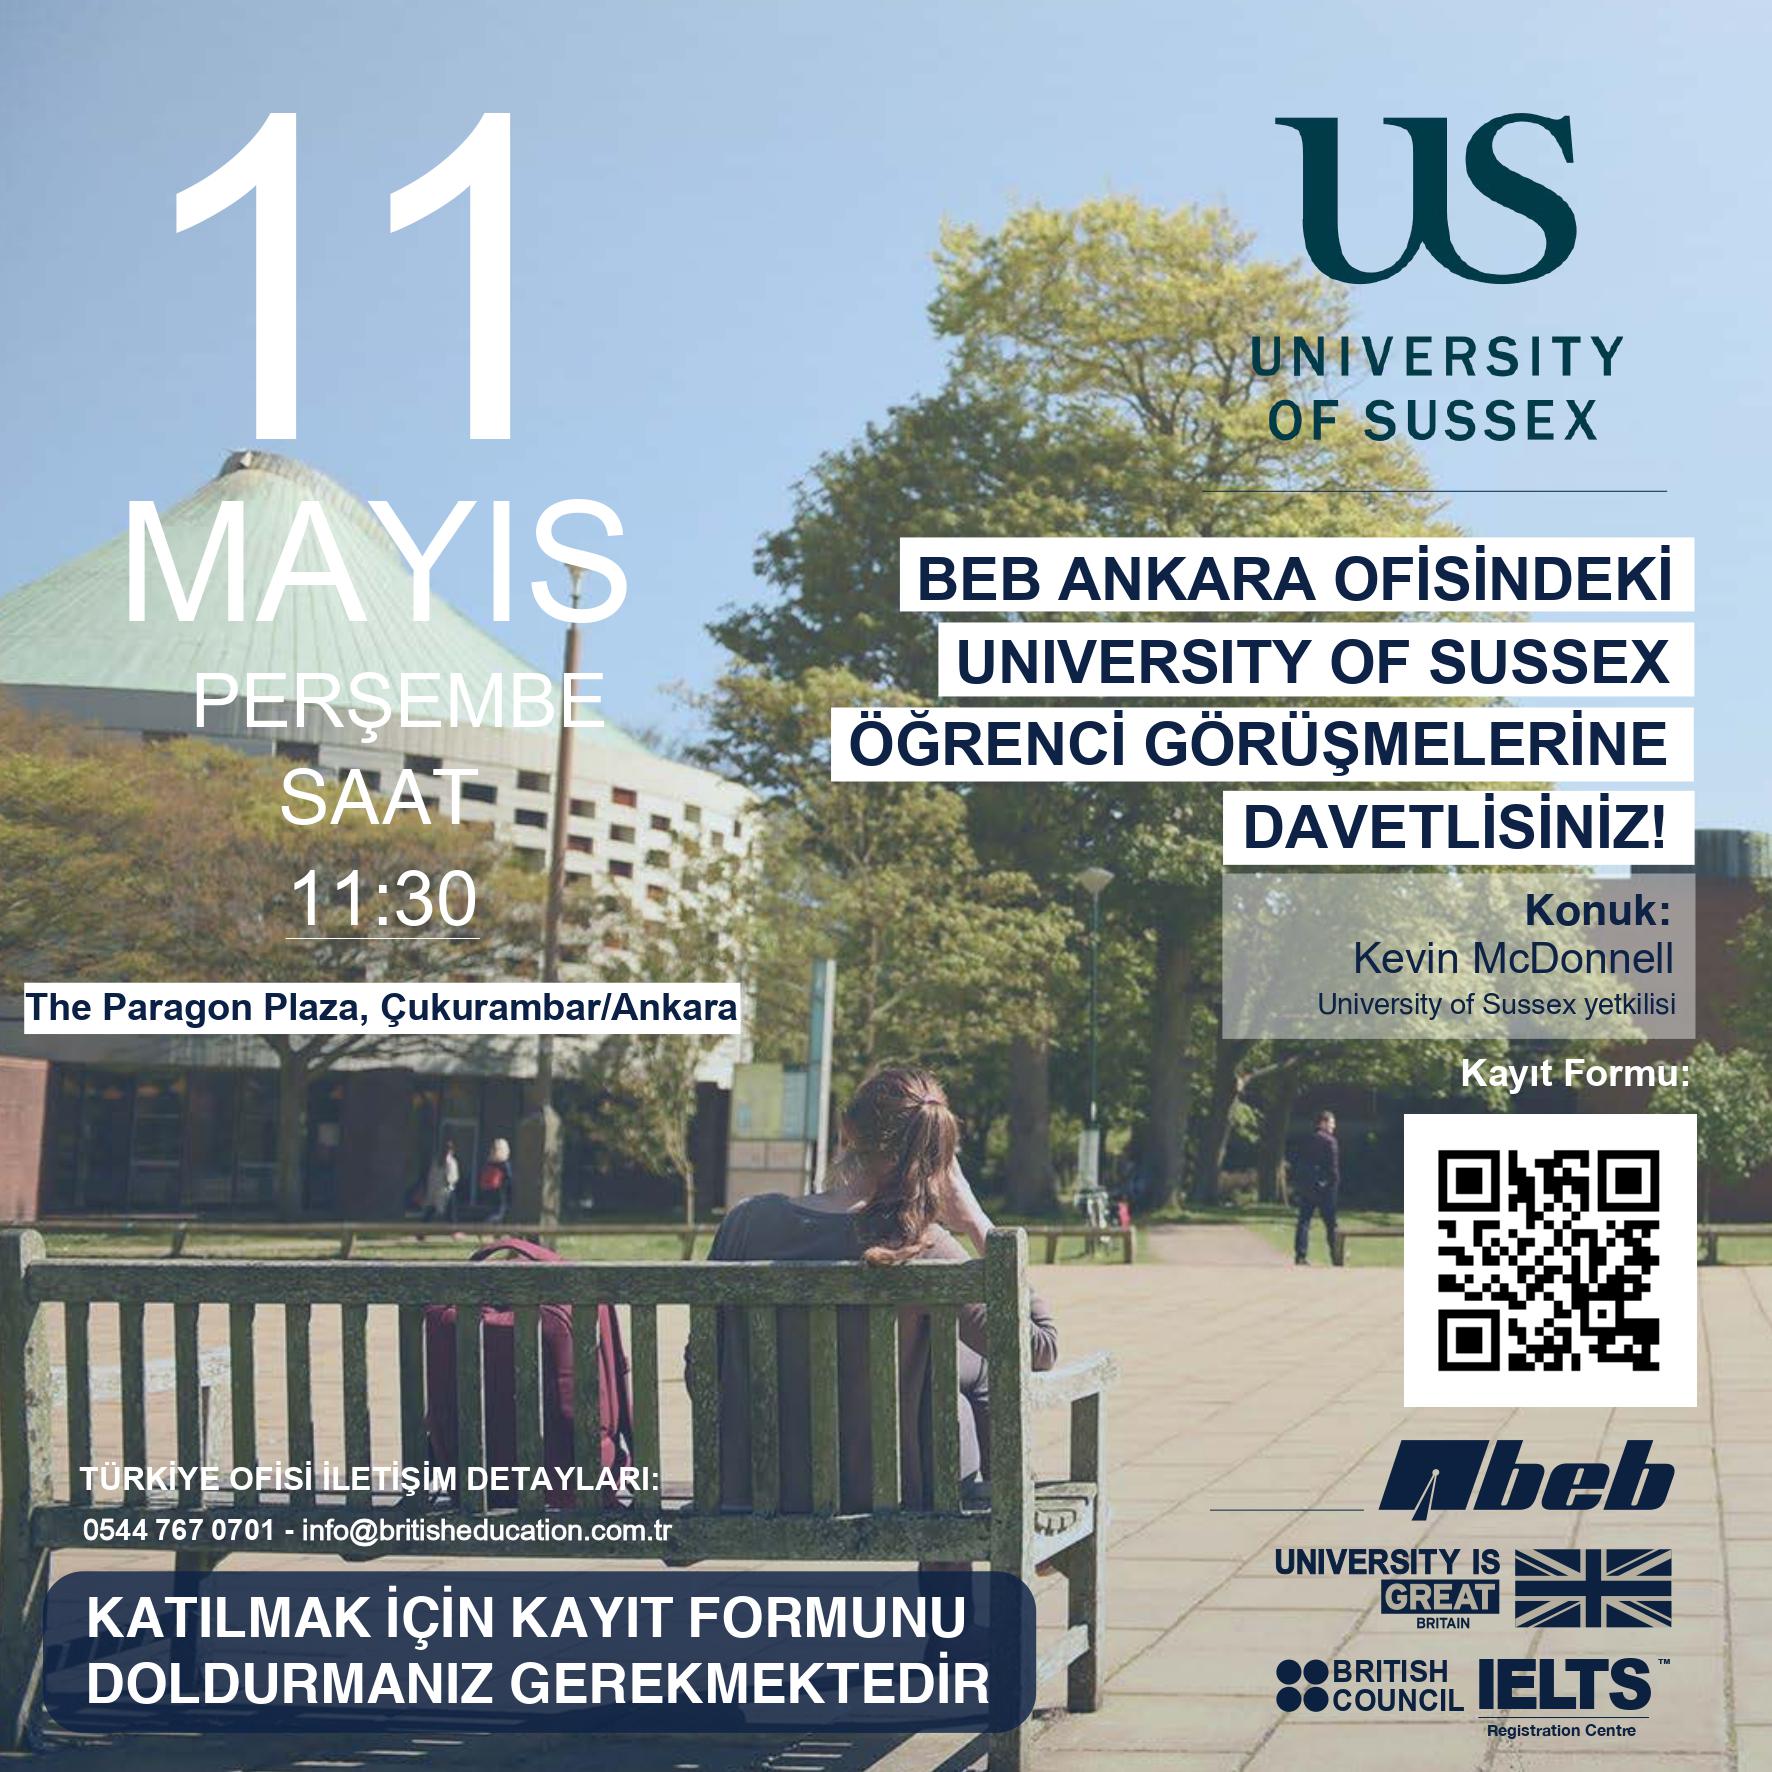 Dünyanın en iyi 20 İngiltere Üniversitesinden biri olan University of Sussex'in BEB Ankara Ofisinde öğrencilerle bire bir görüşmeler gerçekleştireceği aktivitenin davetiye görseli ve görsel içerisinde yer alan Üniversite kampüsü ile öğrenciler